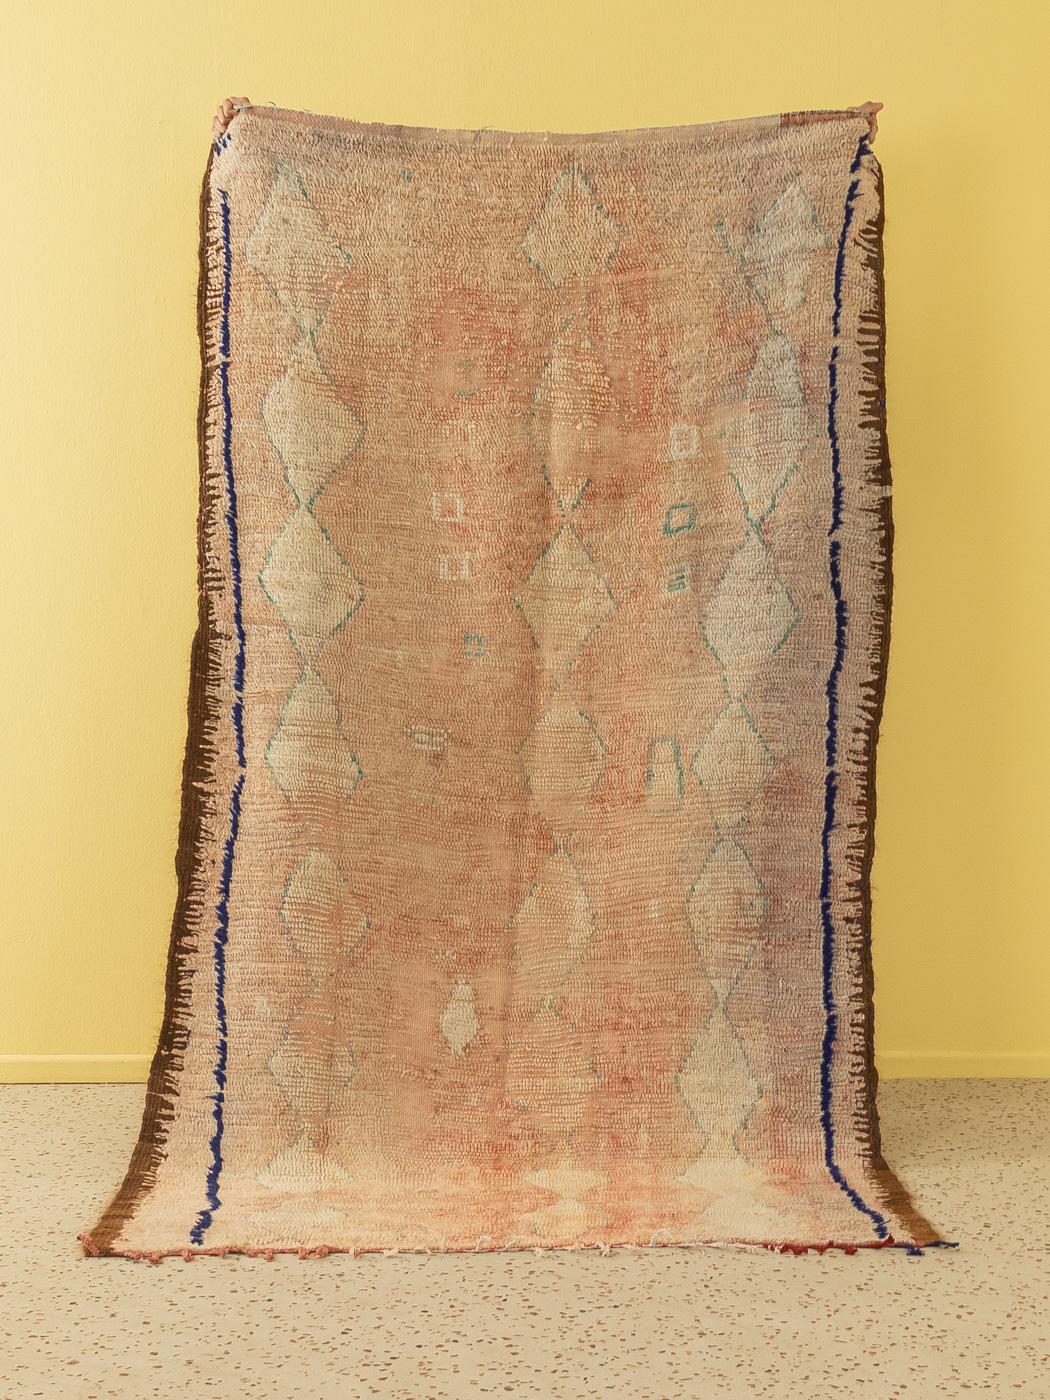 Dieser Vintage Rehamna ist ein Teppich aus 100 % Wolle - weich und angenehm zu tragen. Unsere Berberteppiche sind handgefertigt, ein Knoten nach dem anderen. Jeder unserer Berberteppiche ist ein langlebiges Einzelstück, das auf nachhaltige Weise aus